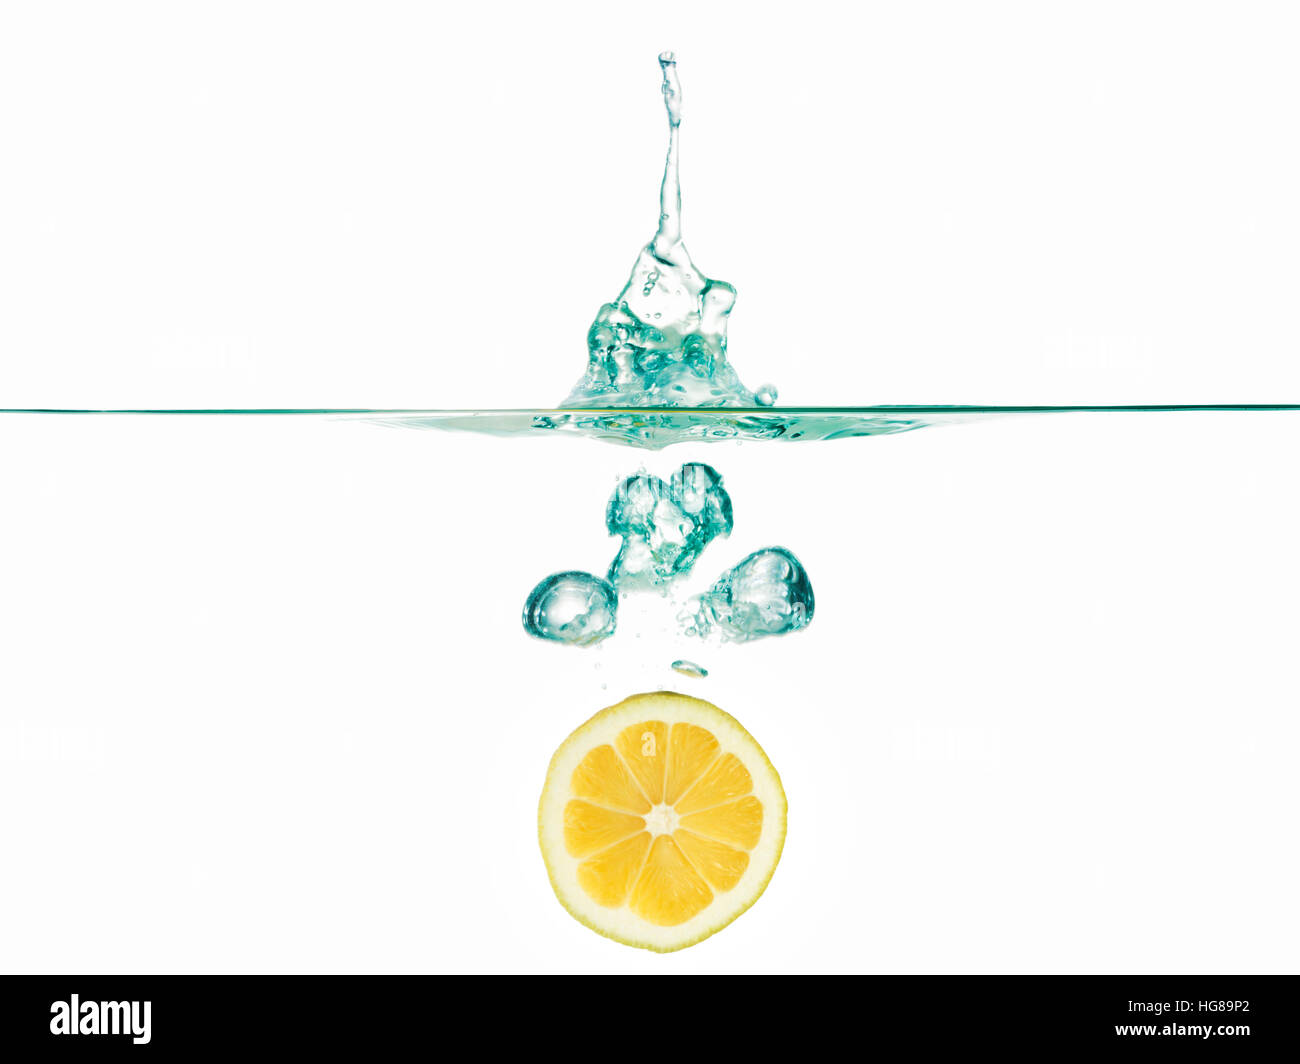 Tranche de citron dans l'eau contre fond blanc Banque D'Images